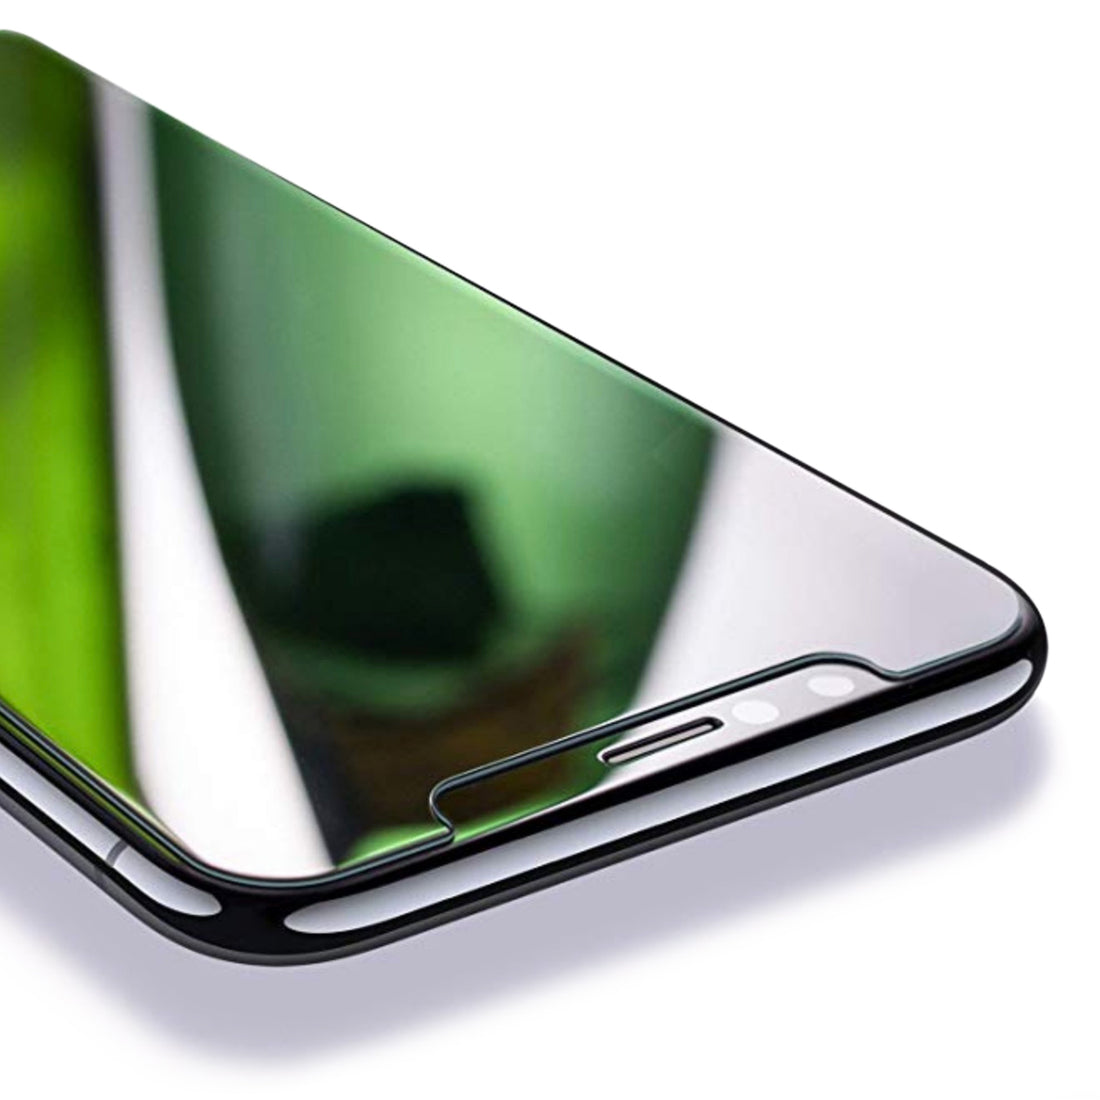 Power Theory Schutzfolie kompatibel mit iPhone 11/iPhone XR [2 Stück] - mit Schablone, Glas Folie, Displayschutzfolie, Schutzglas Preview #3